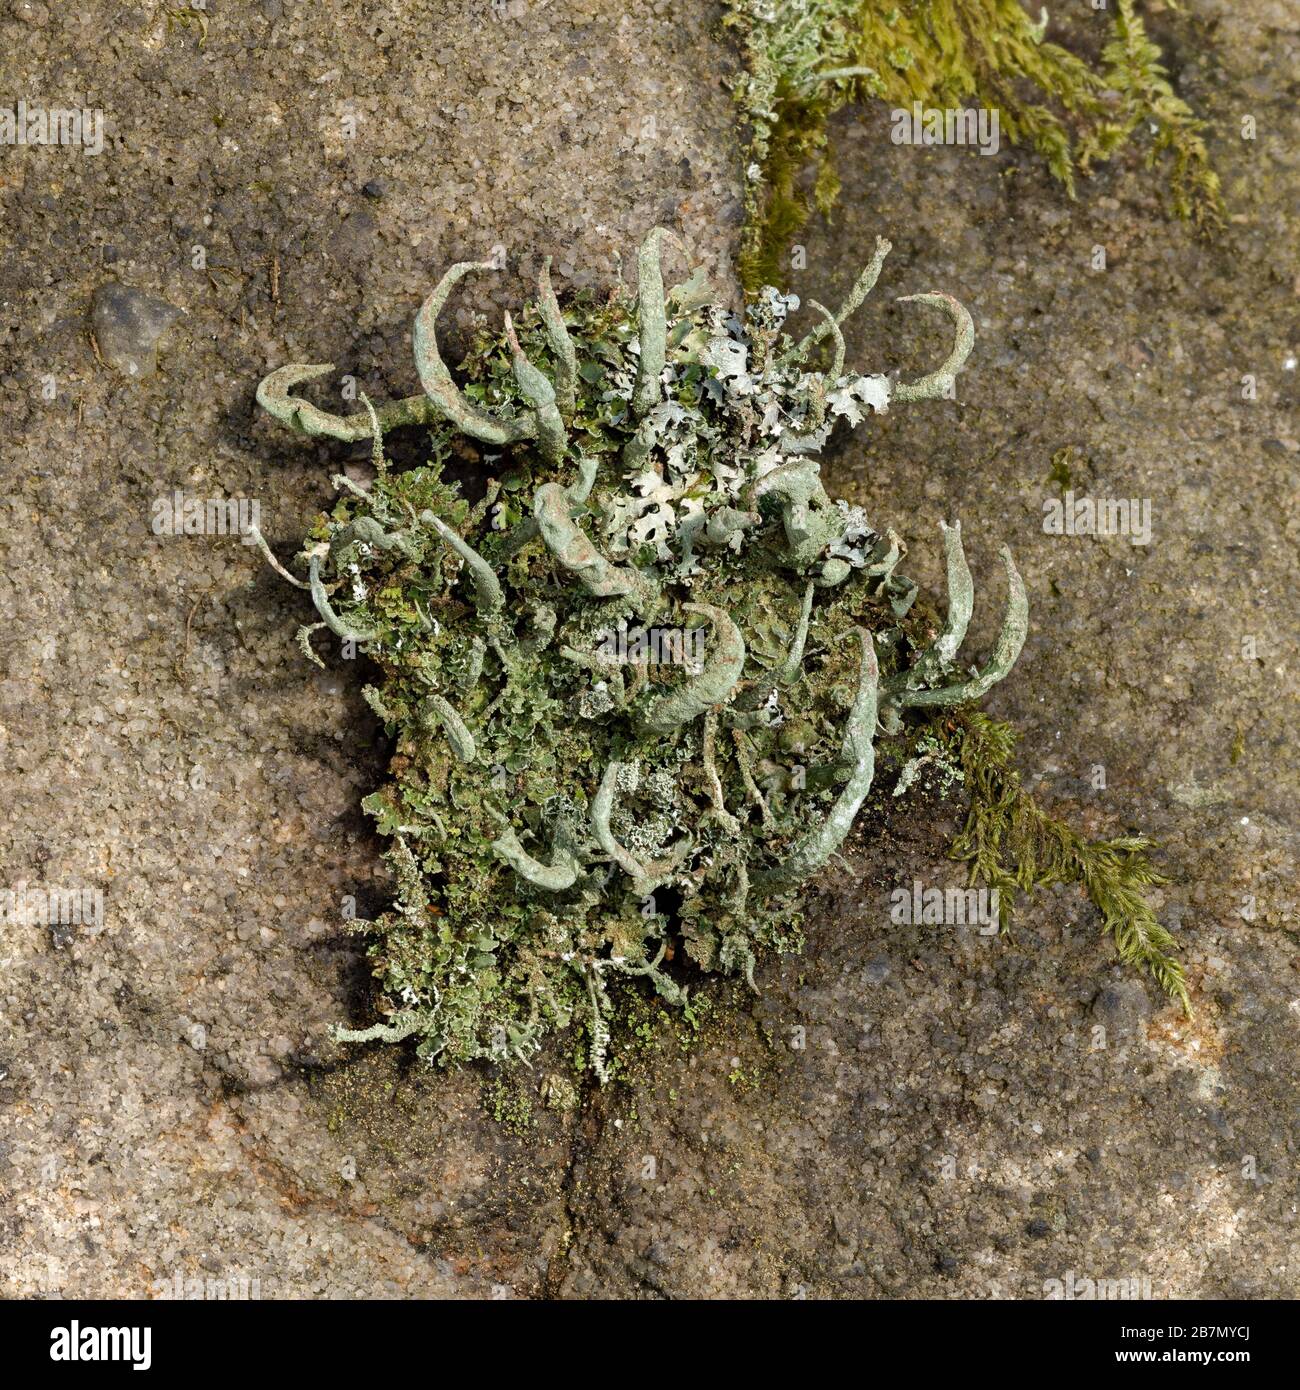 The lichen Cladonia coniocrea, Peak District National Park, England Stock Photo